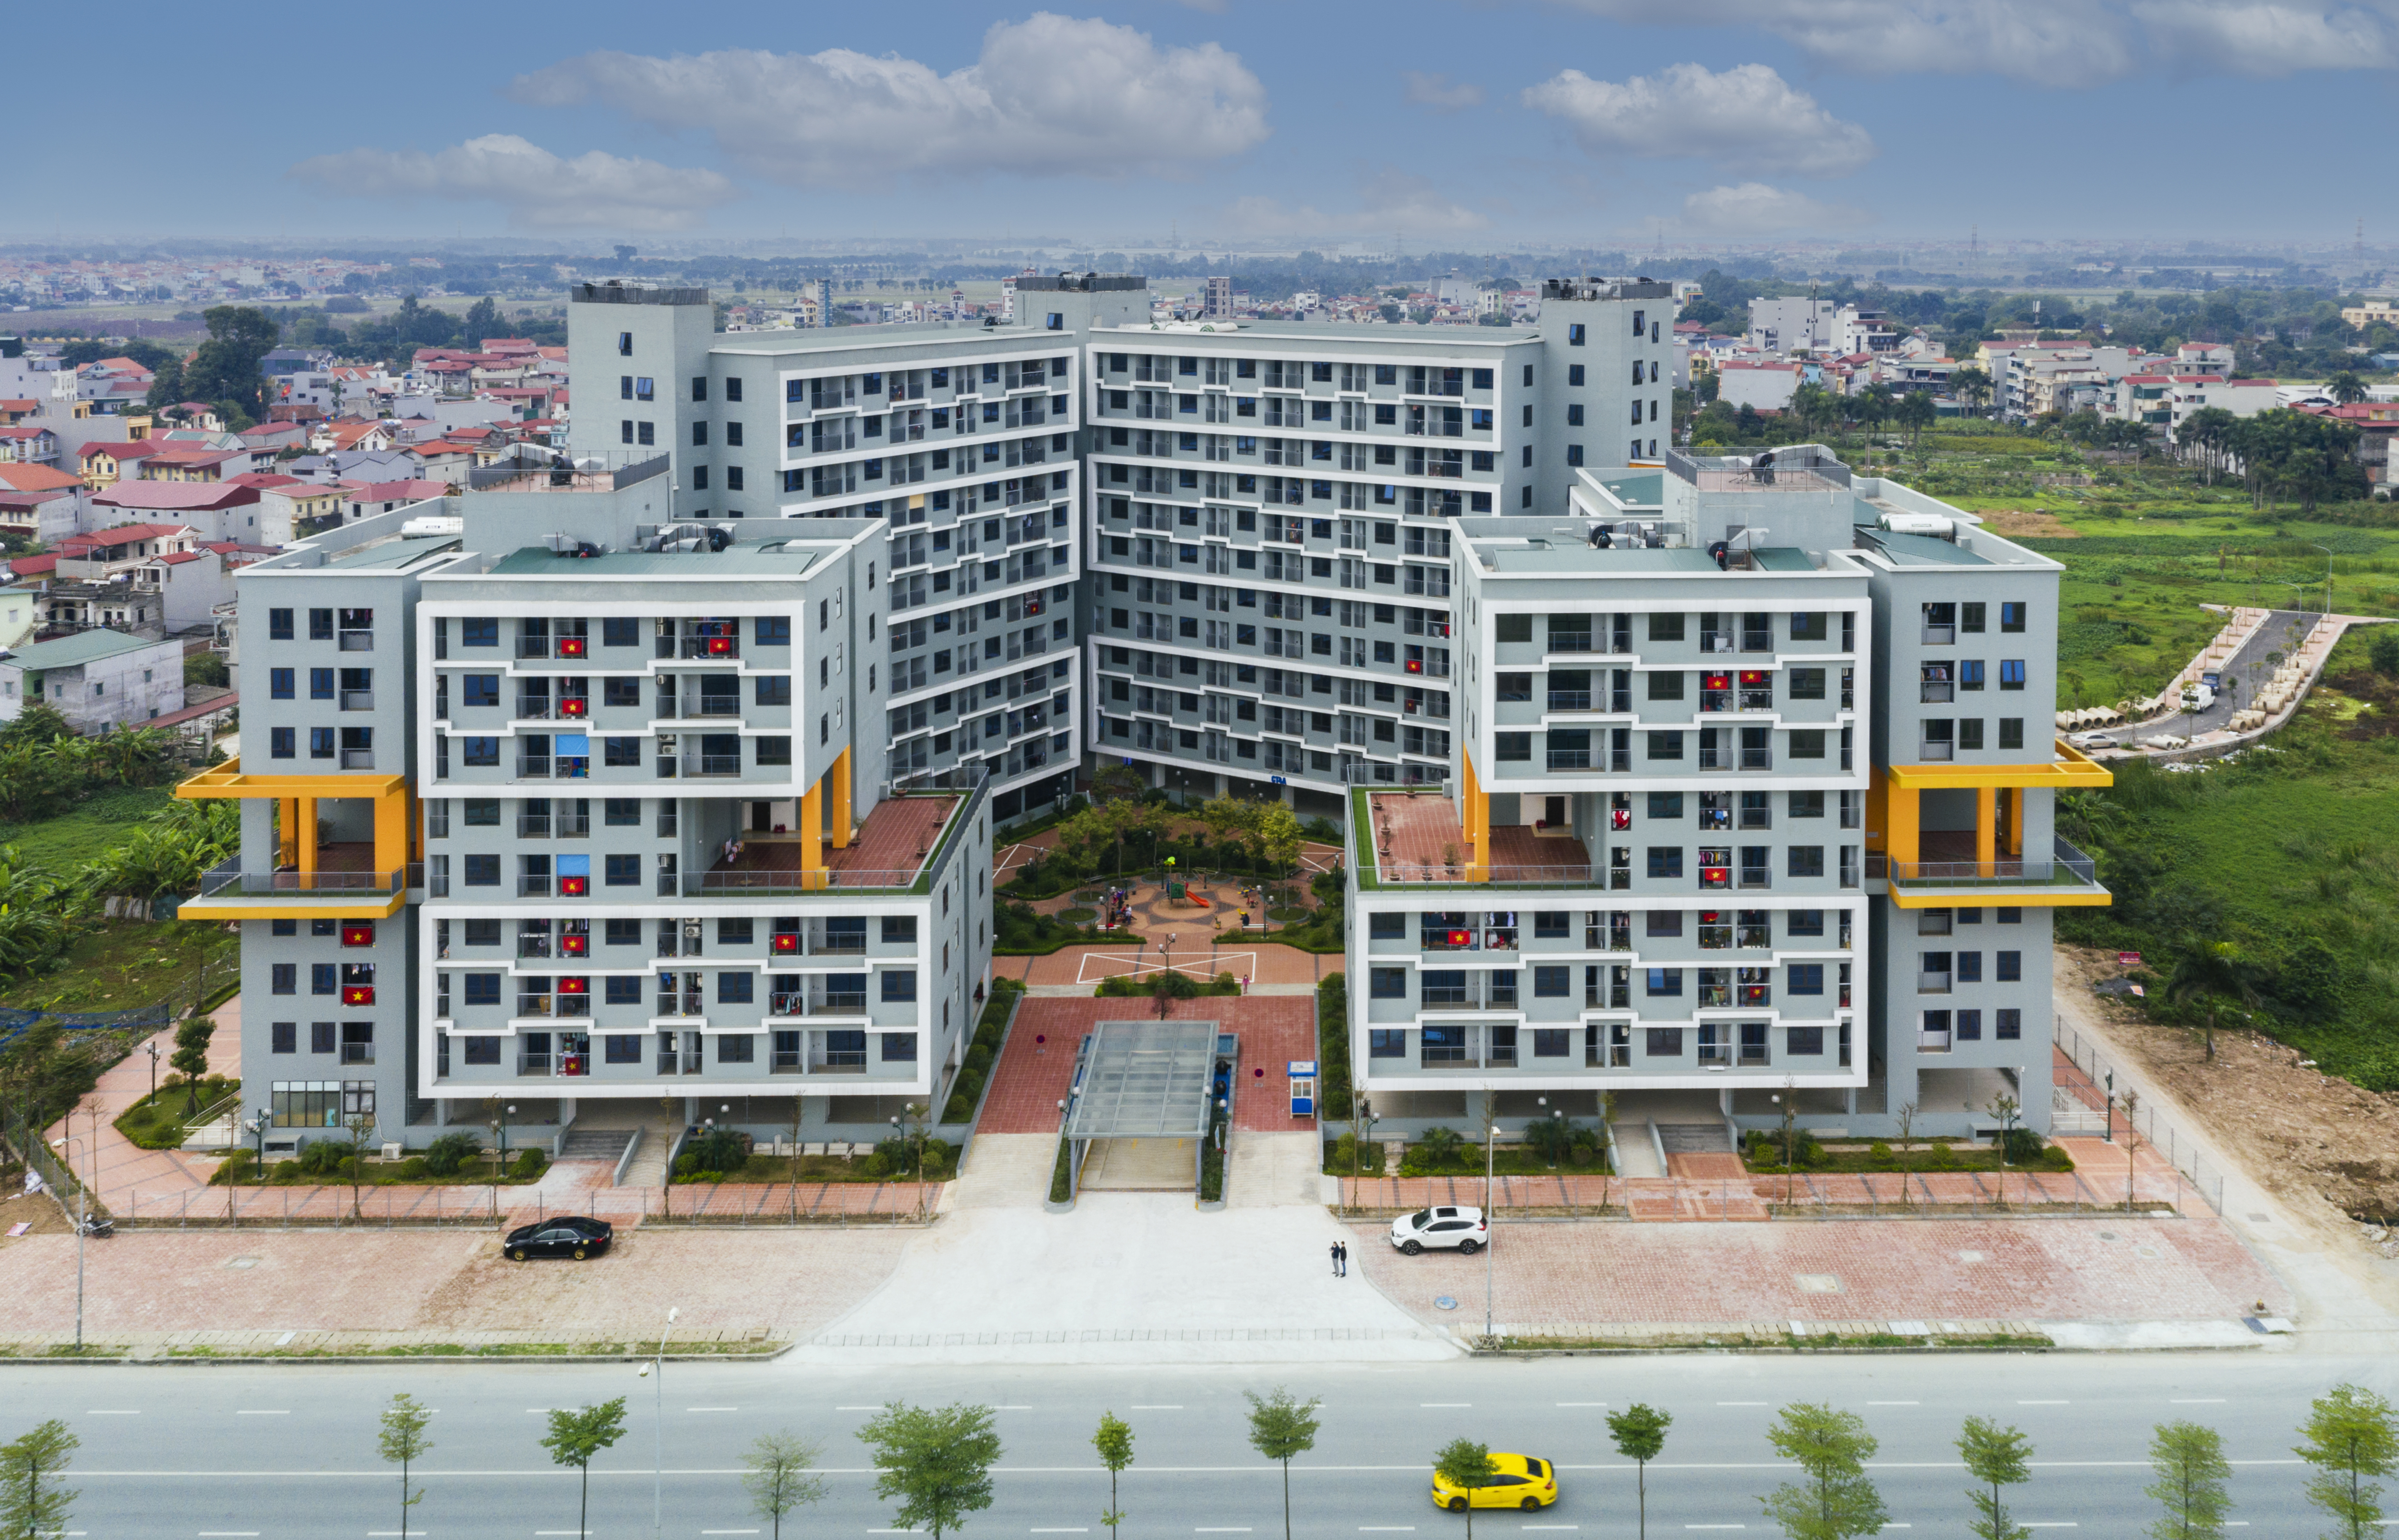 THÔNG BÁO: Kết quả bốc thăm Nhà ở xã hội Đợt 6 Tòa nhà CT4 Khu đô thị mới Kim Chung, Đông Anh, Hà Nội  (Thăng Long Green City)